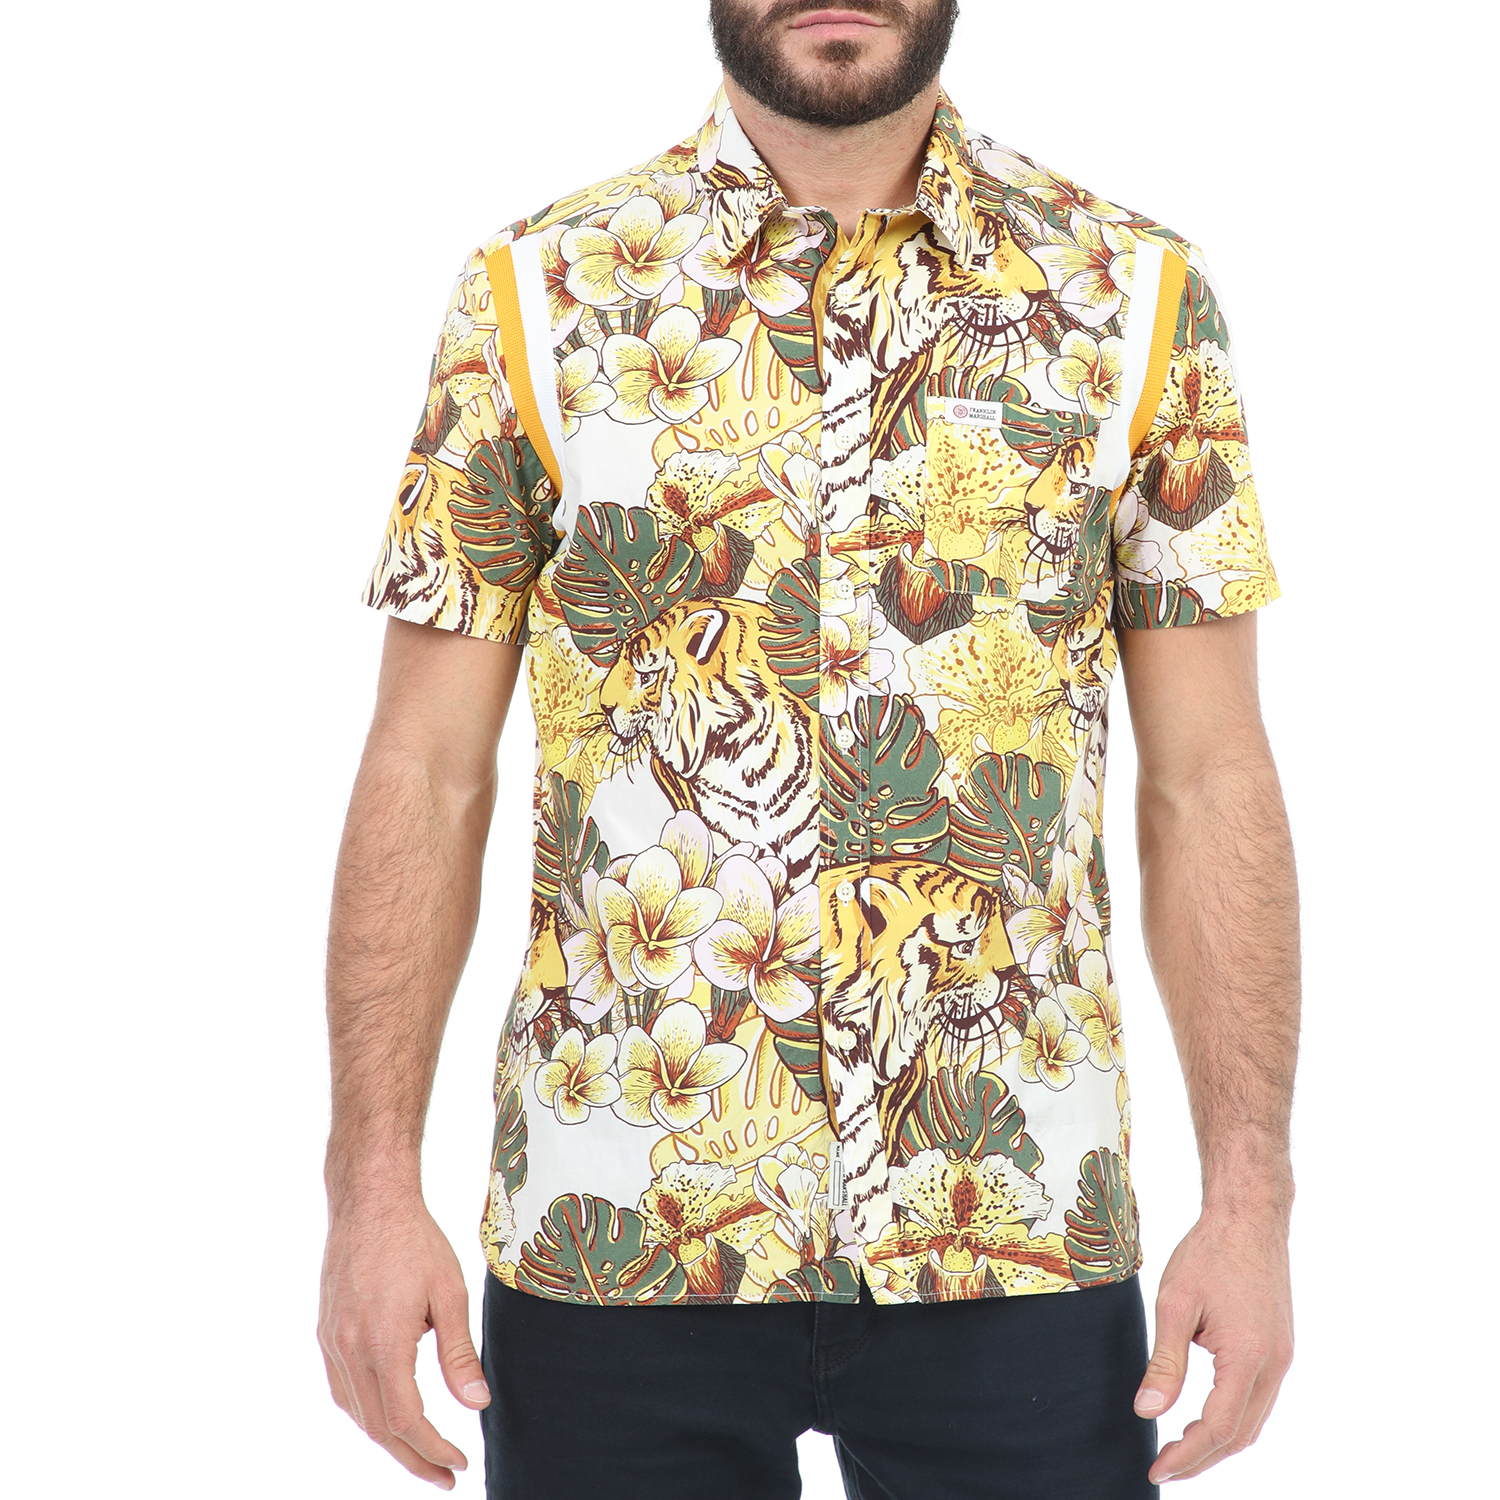 Ανδρικά/Ρούχα/Πουκάμισα/Κοντομάνικα-Αμάνικα FRANKLIN & MARSHALL - Ανδρικό κοντομάνικο πουκάμισο FRANKLIN & MARSHALL καφέ